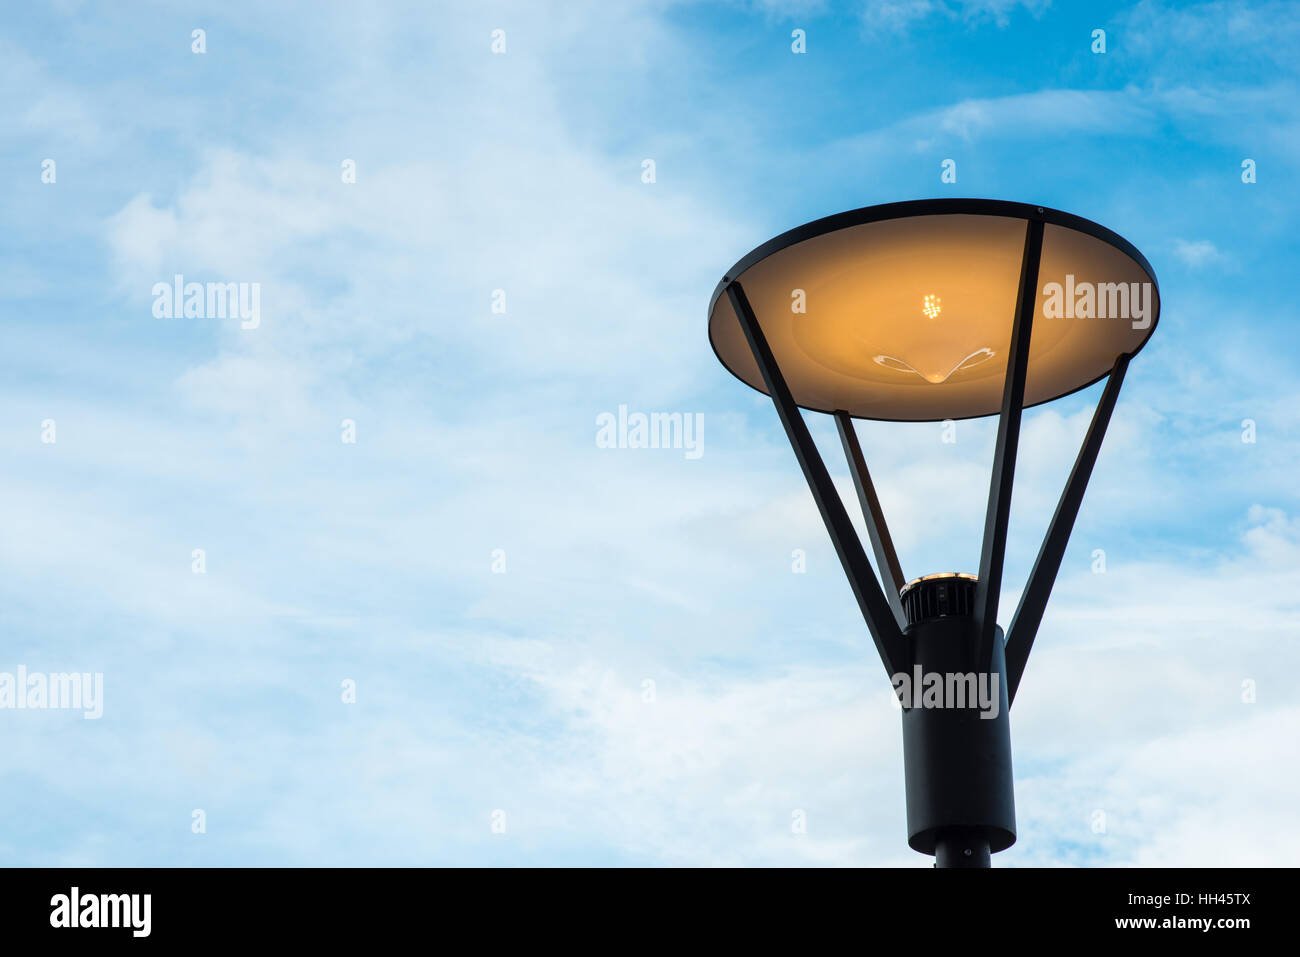 Stile moderno lampada contro il cielo blu Foto Stock